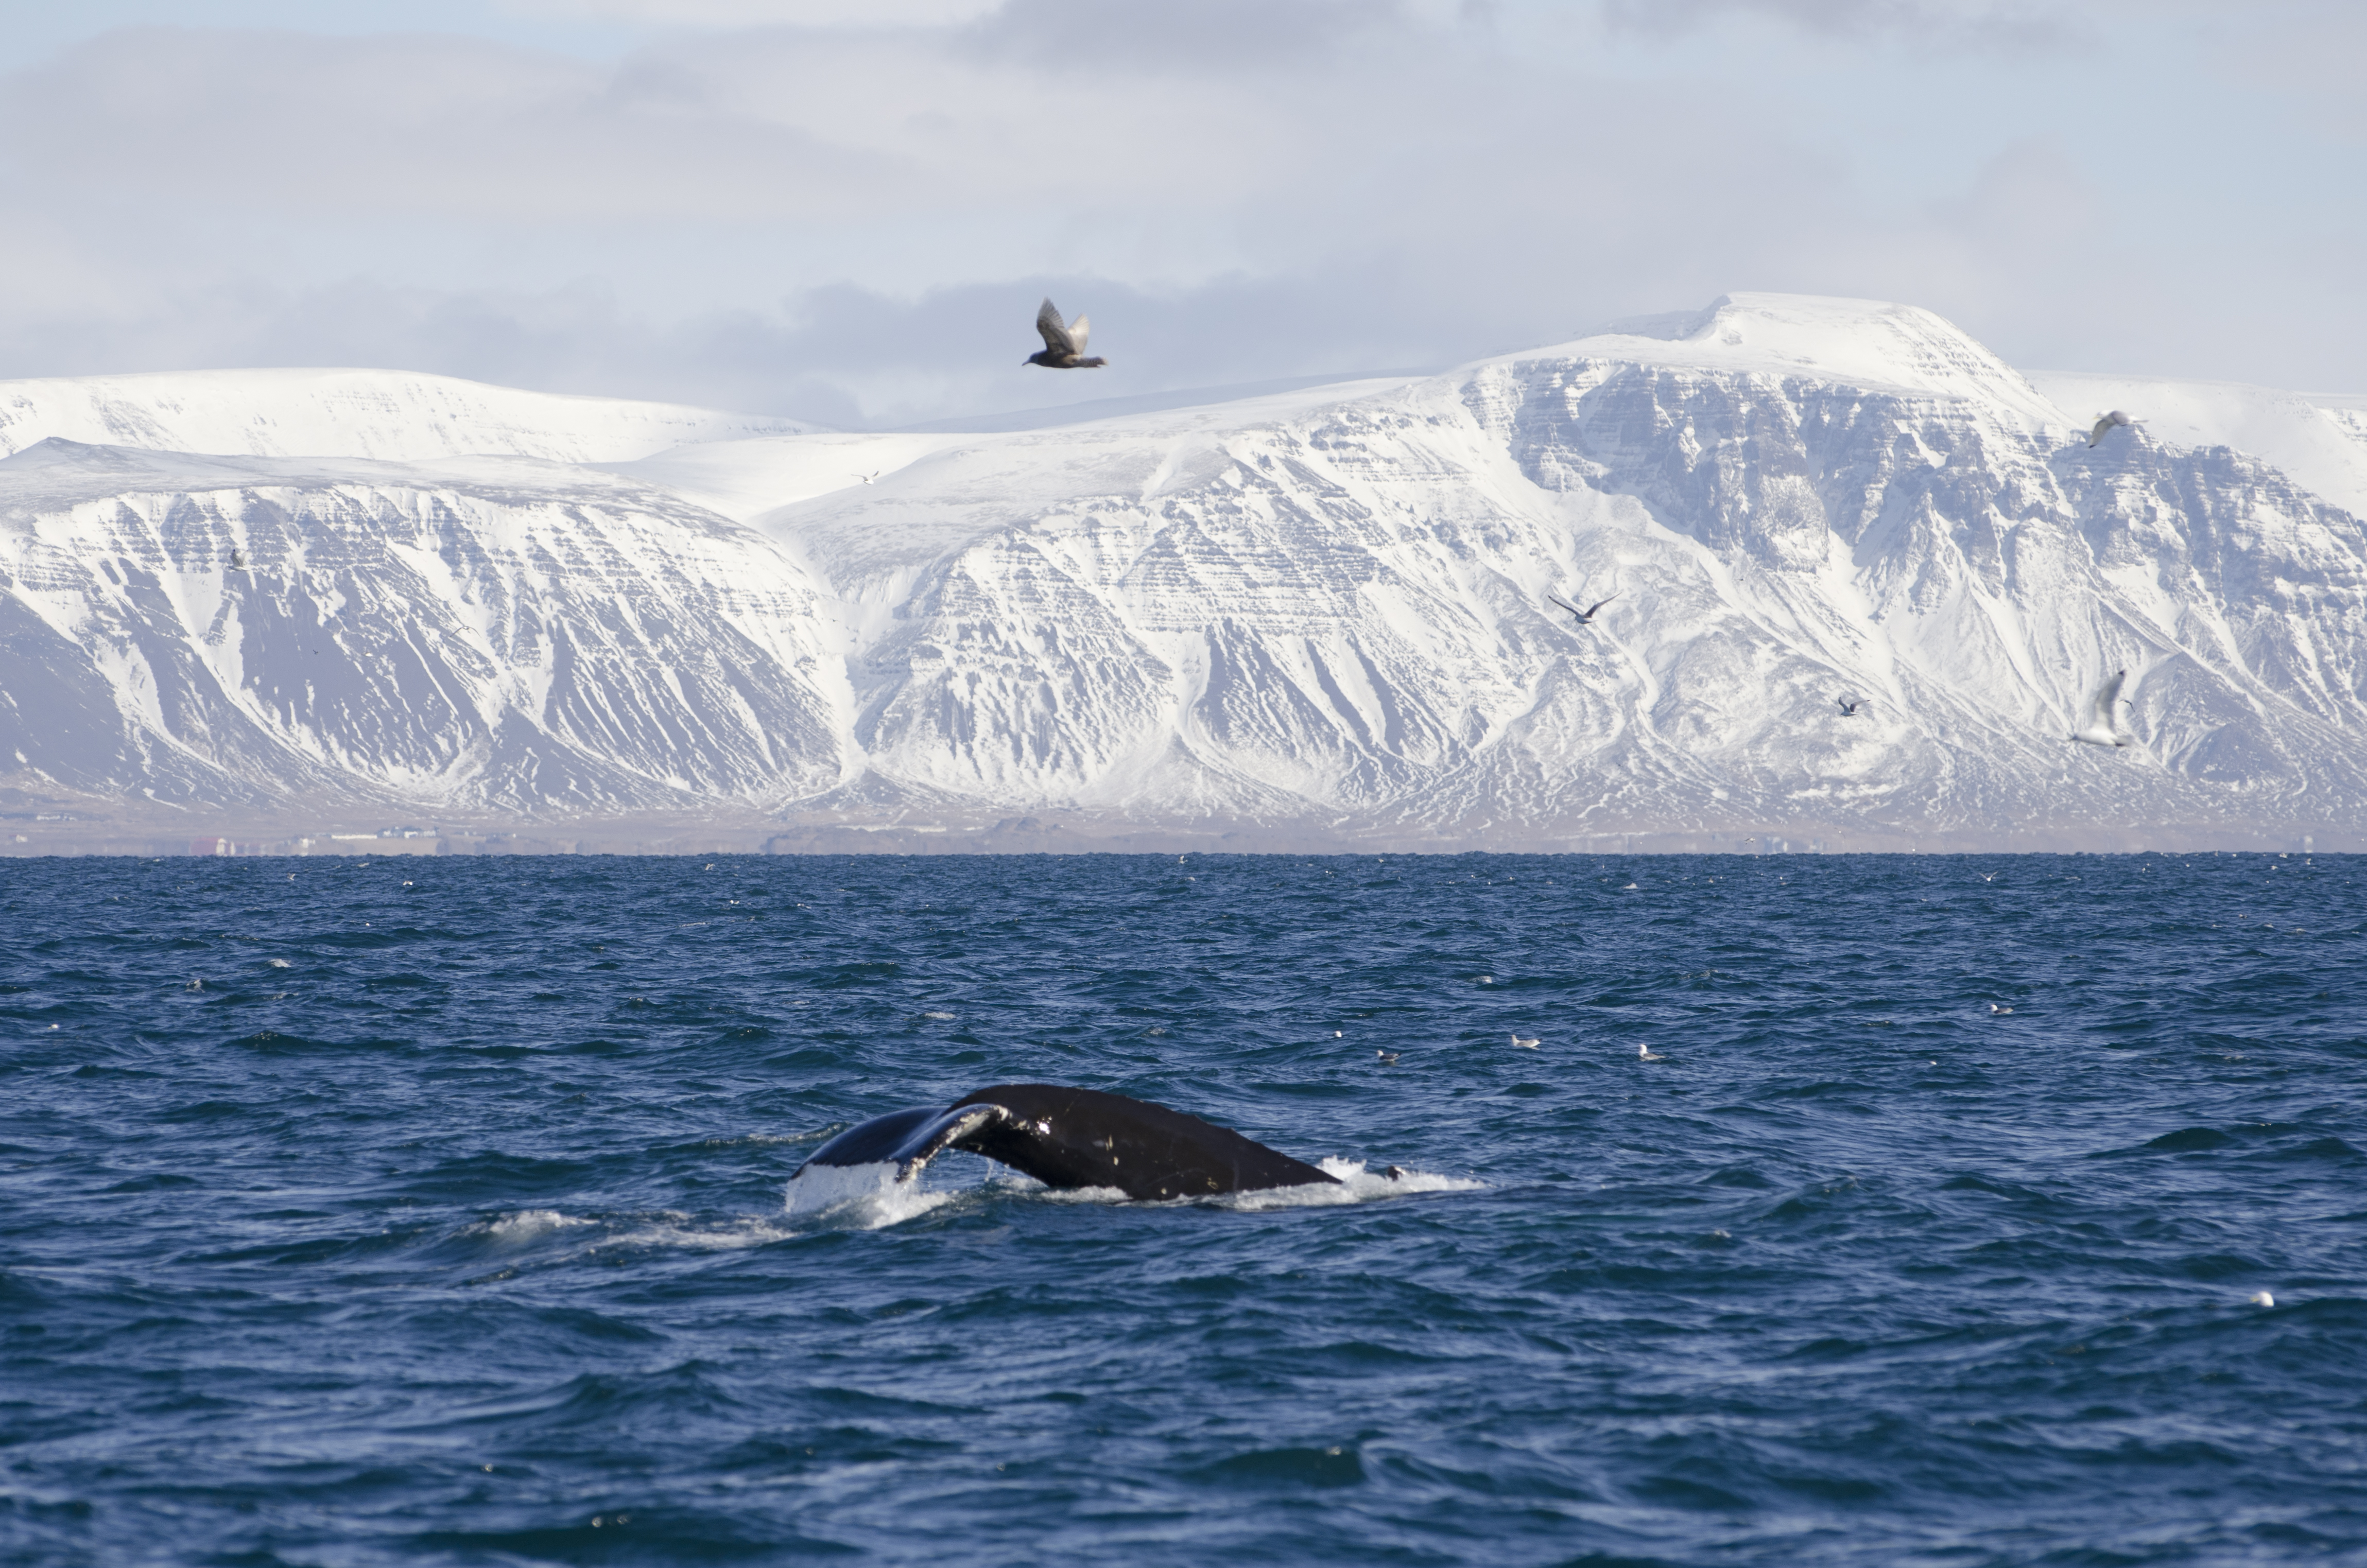 冬に催行するホエールウォッチングツアーに参加するとザトウクジラに出会えるチャンスがある